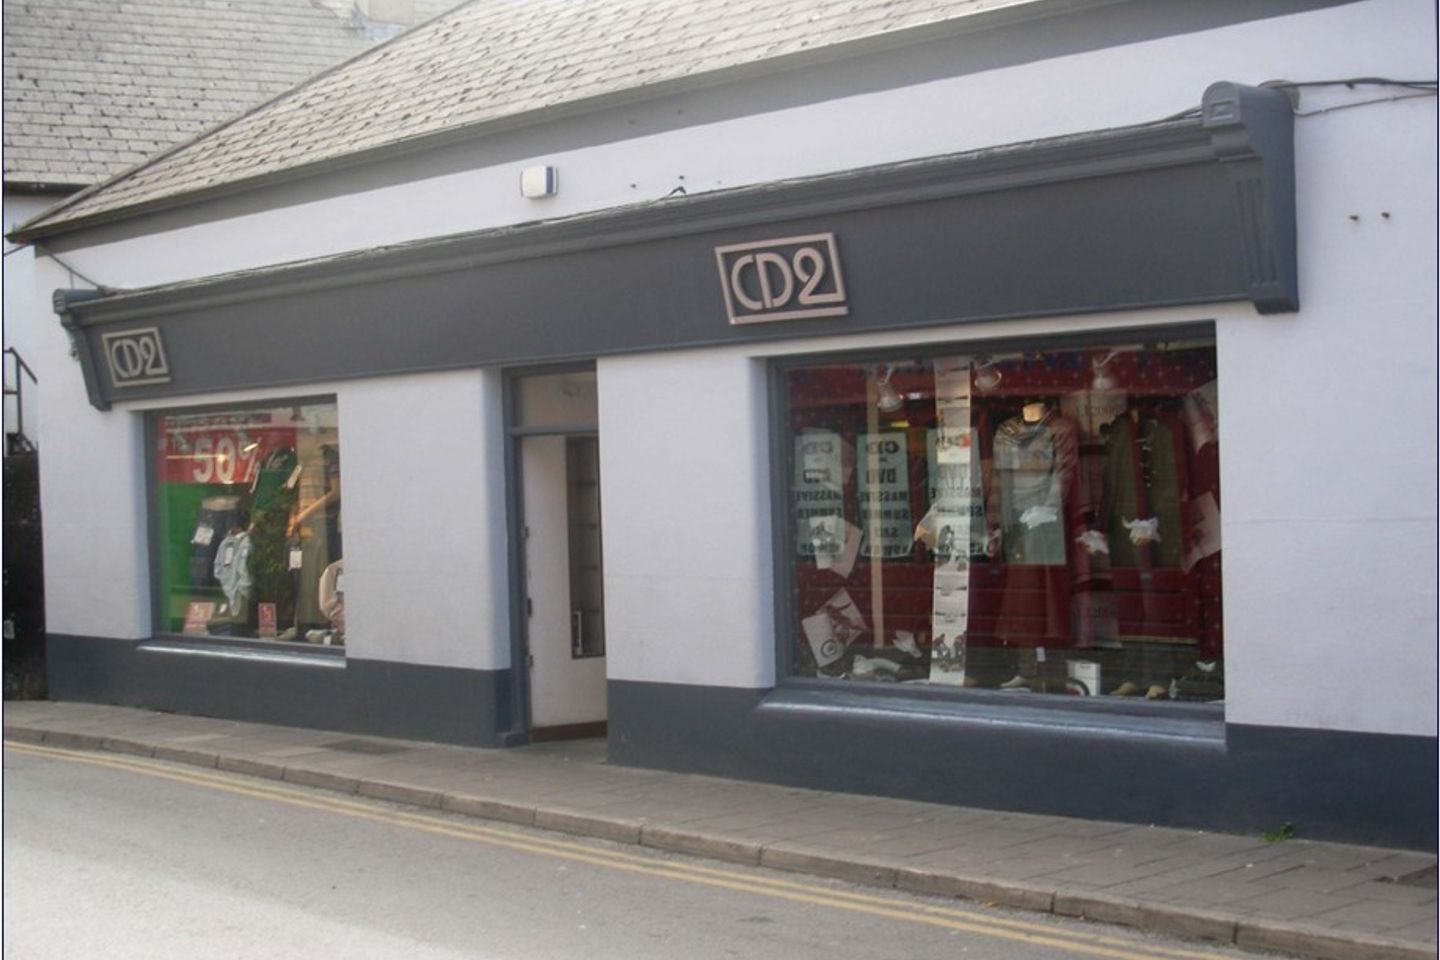 38 Lower Market Street, Ennis, Co. Clare